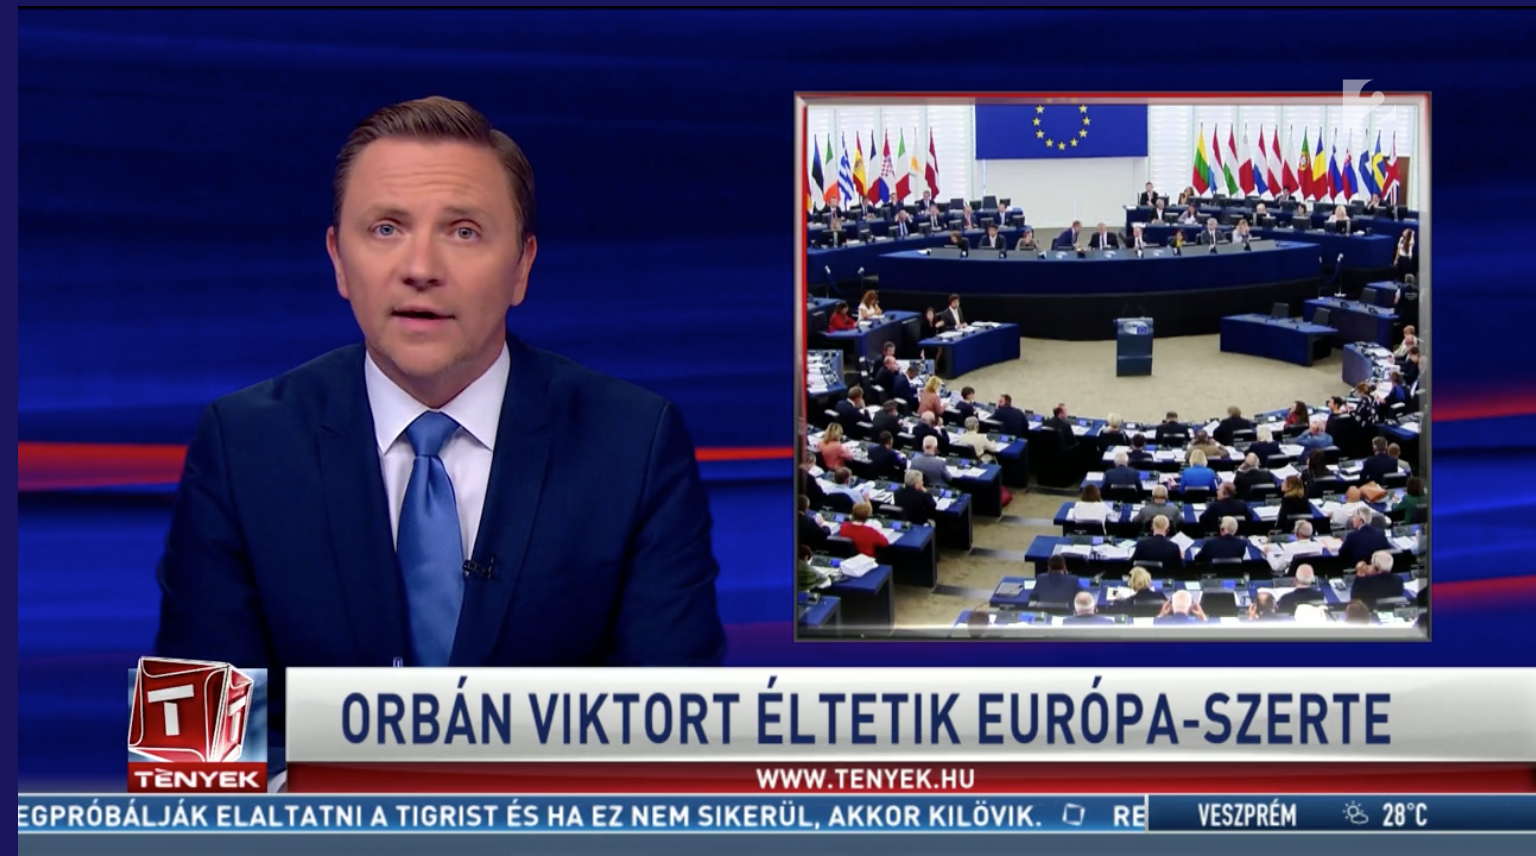 Tények: Orbán Viktort éltetik Európa-szerte